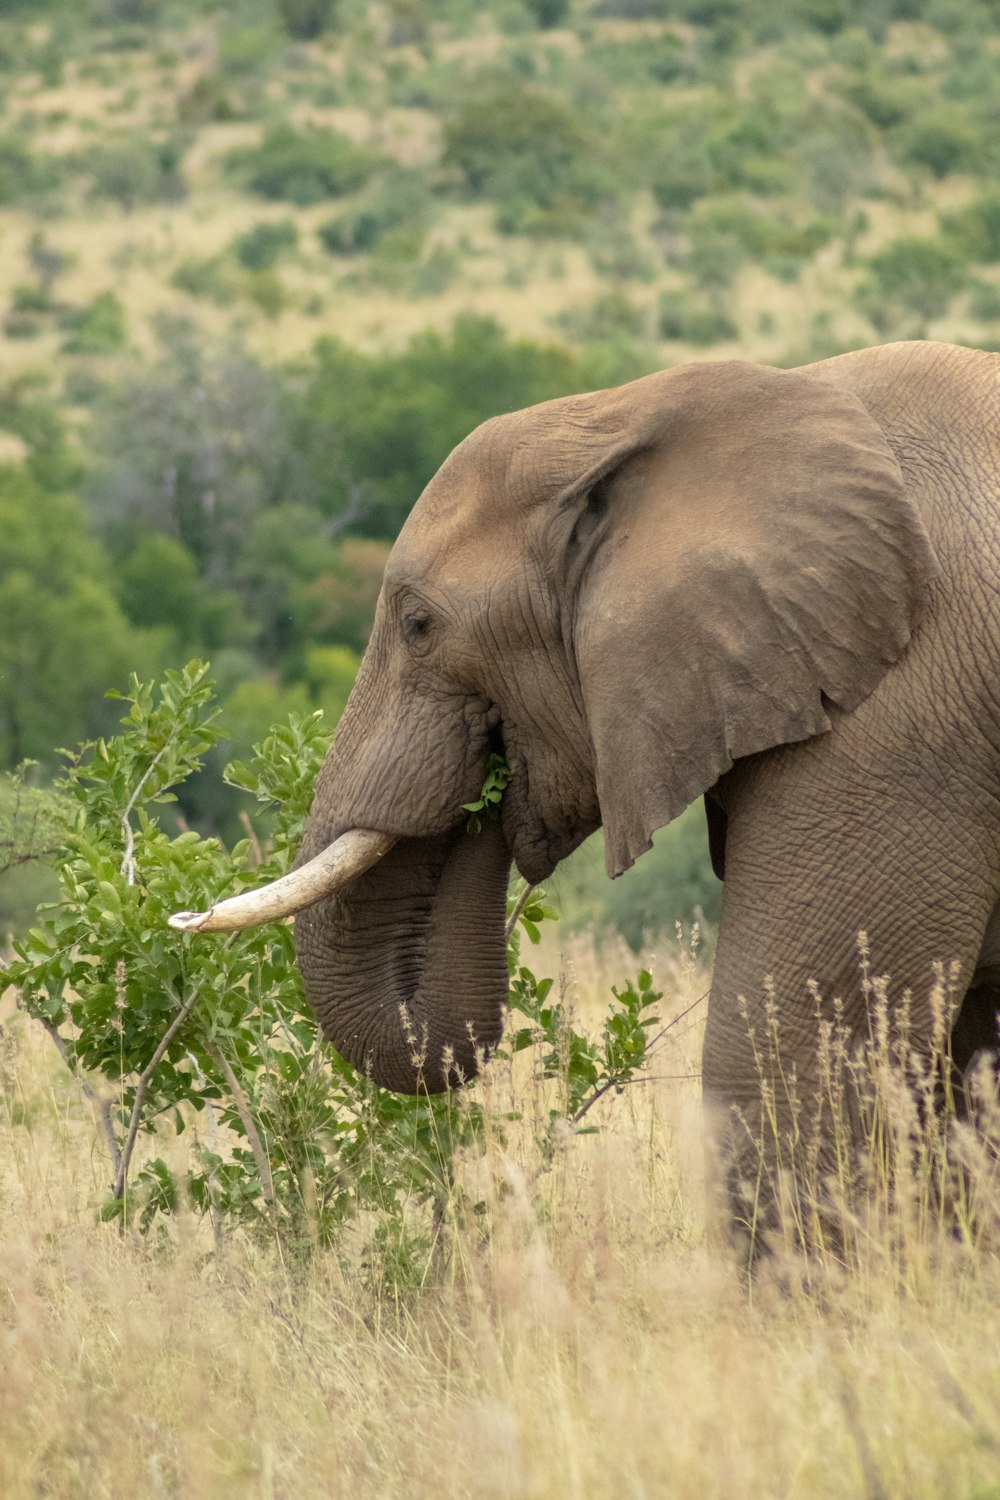 grey elephant grazing on open field